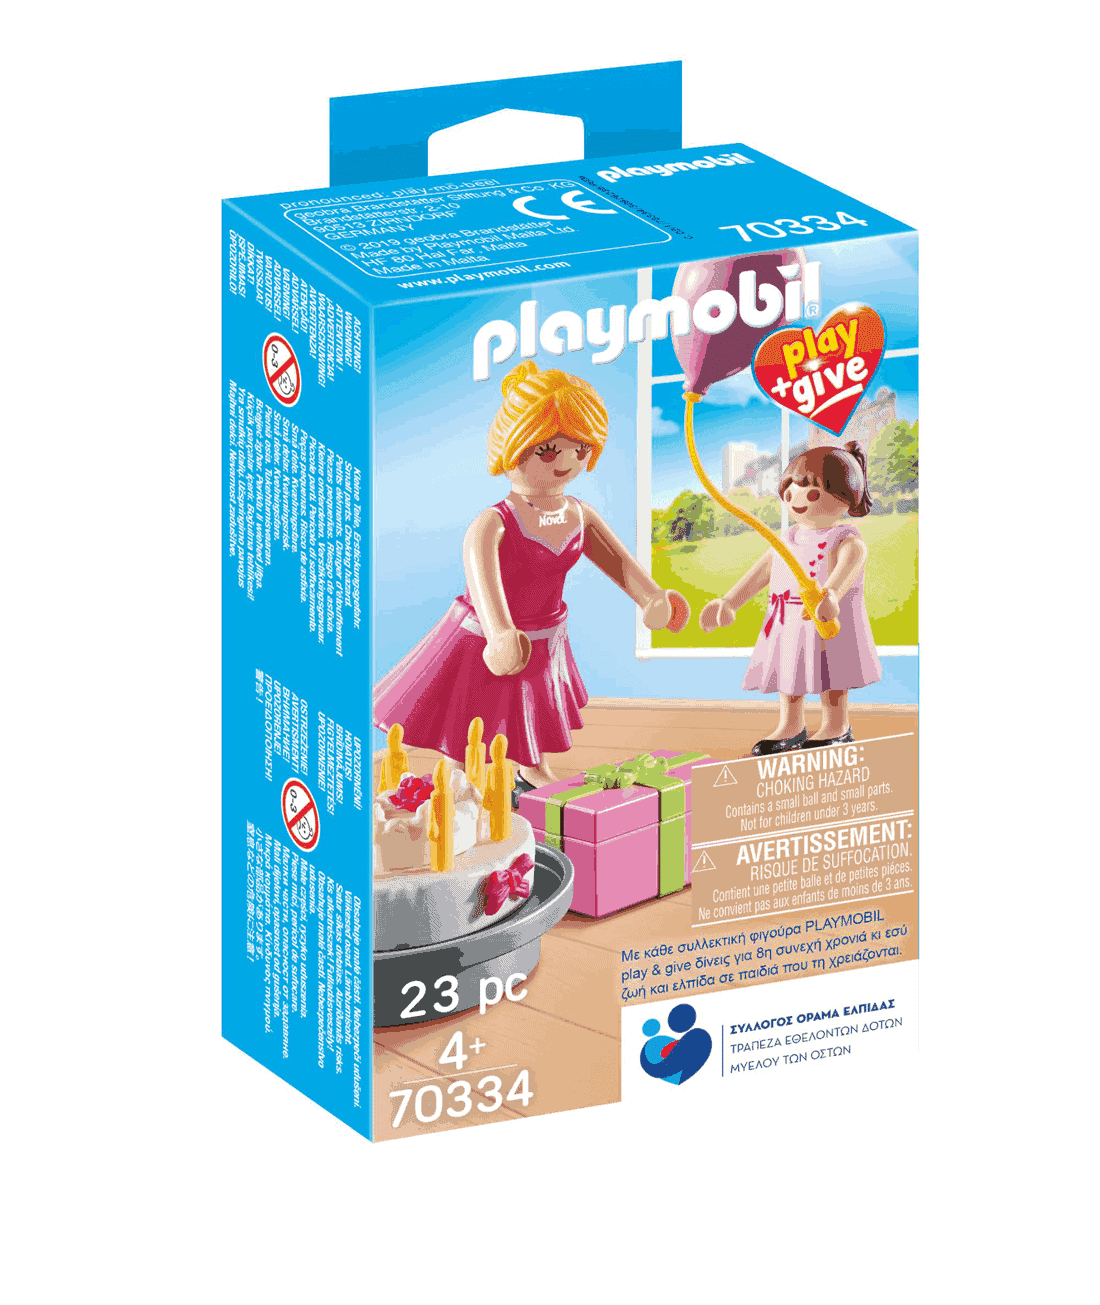 Playmobil - Play & Give 2019 Νονά